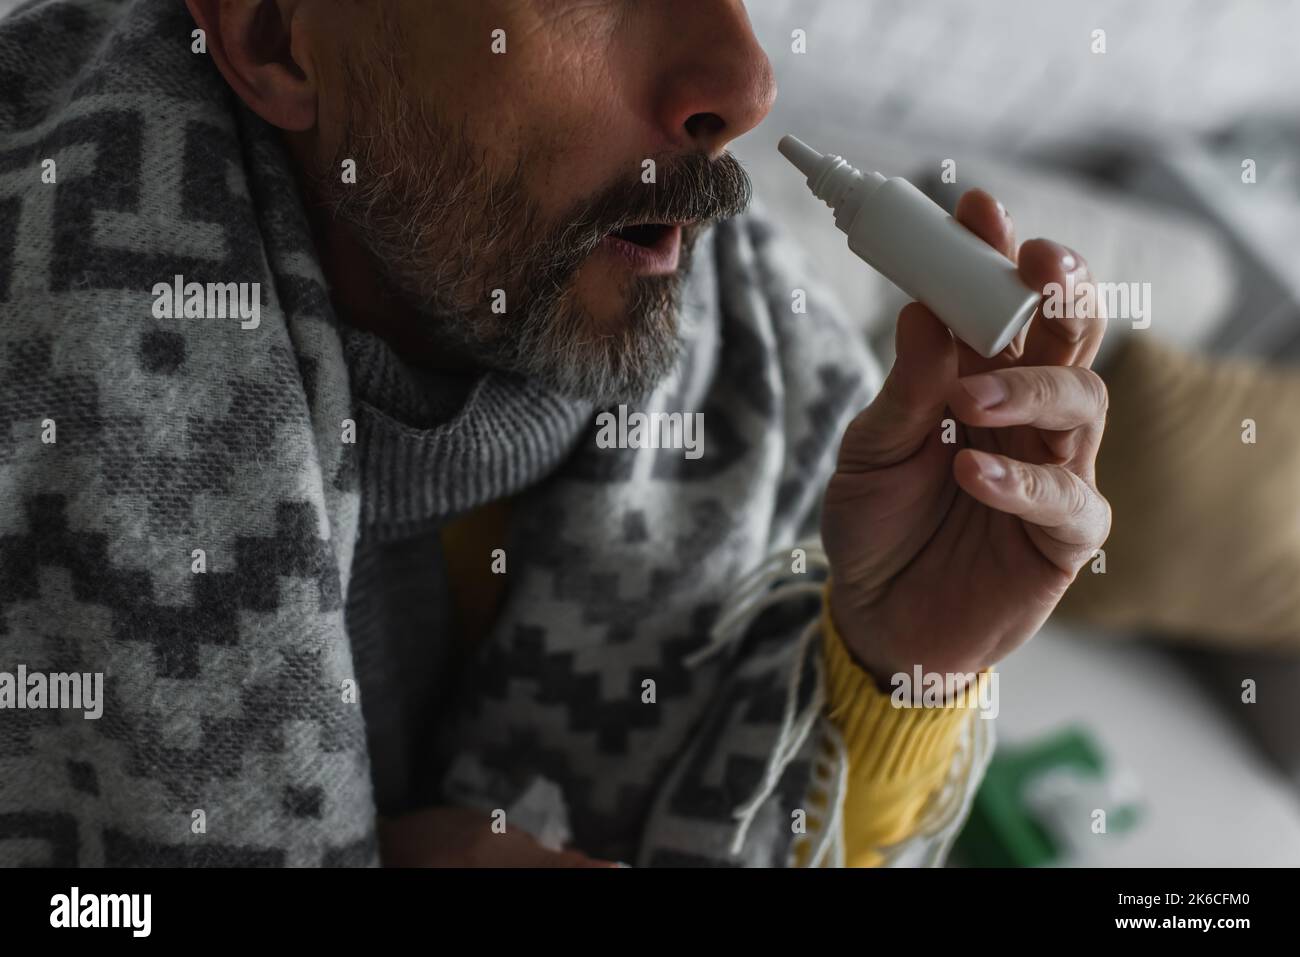 Beschnittene Ansicht eines kranken Mannes mit Rhinitis mit Nasenspray, Stockbild Stockfoto